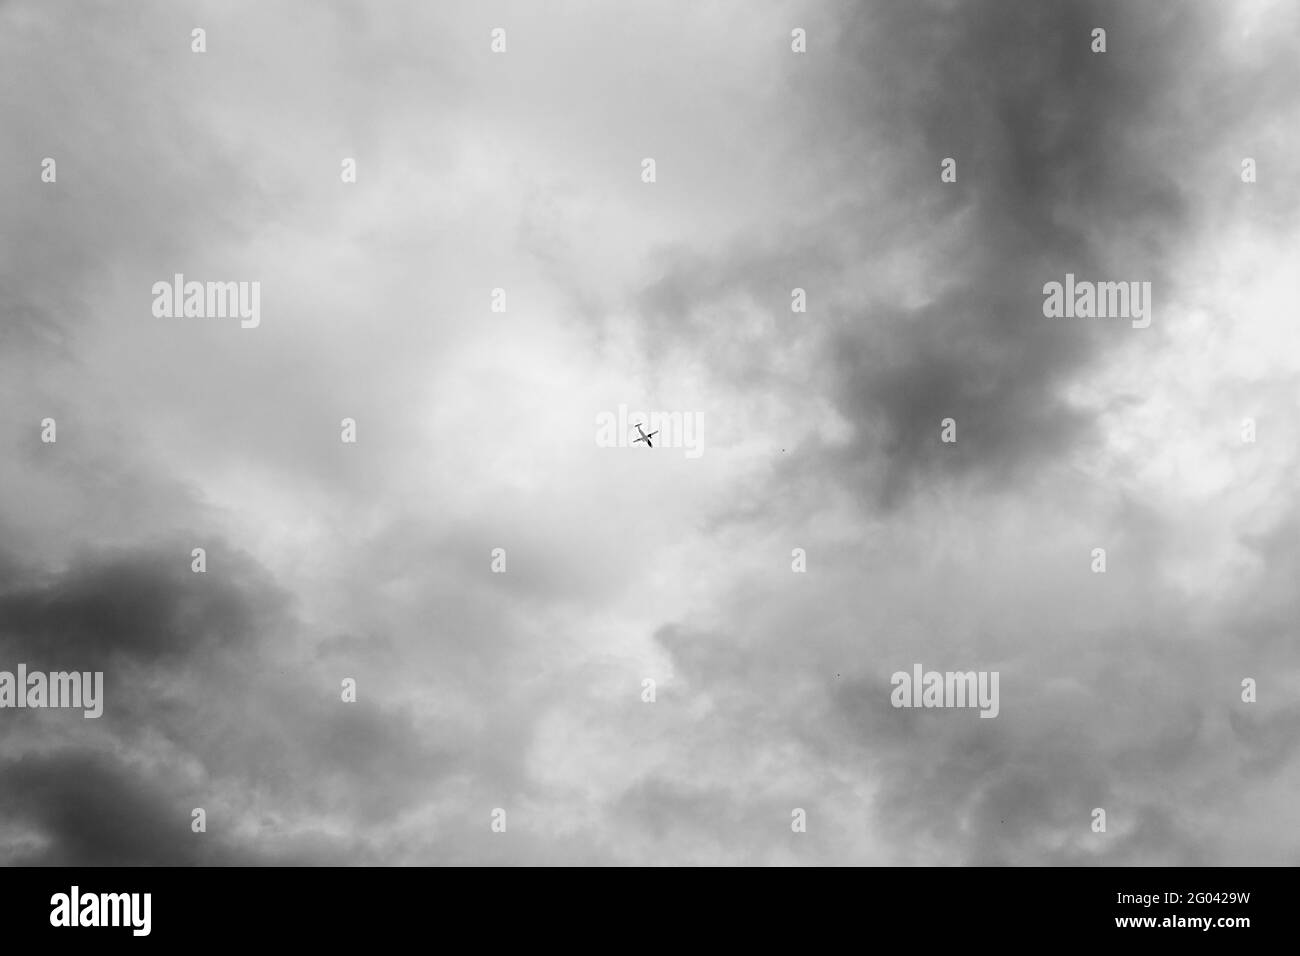 Foto in bianco e nero, vista dal basso di un aereo passeggeri che decollo o atterra contro un cielo blu luminoso. Industria aerospaziale o del turismo. Foto Stock